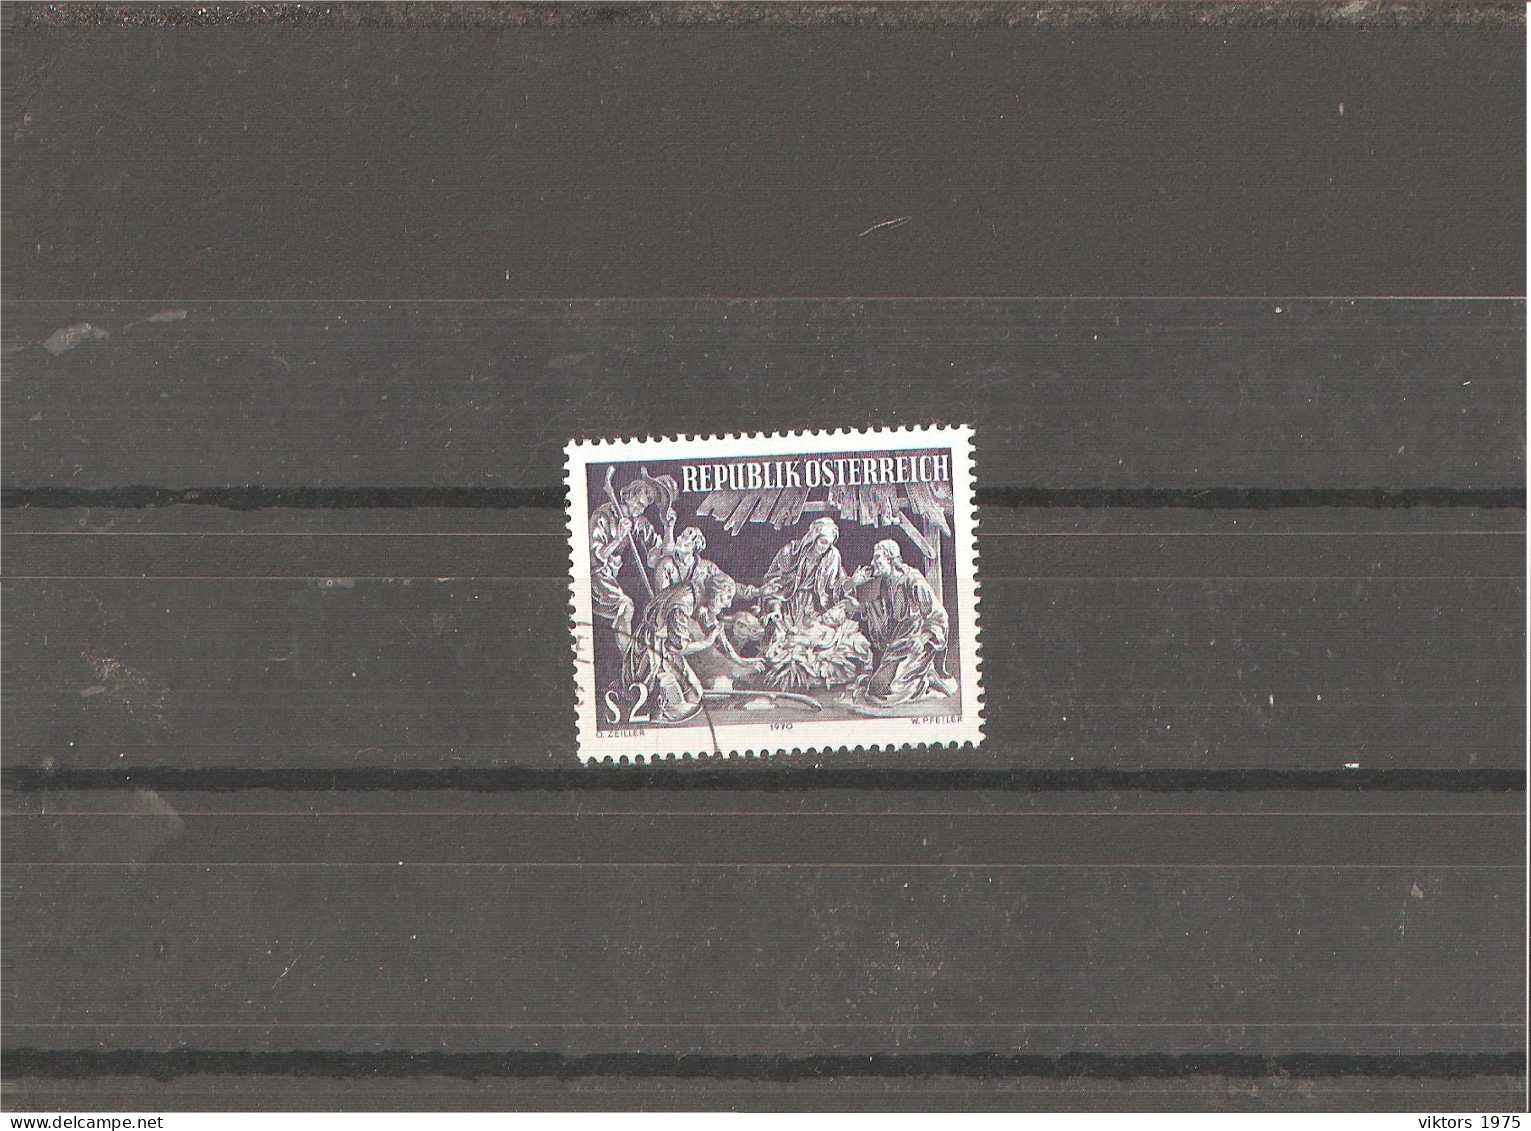 Used Stamp Nr.1349 In MICHEL Catalog - Usati